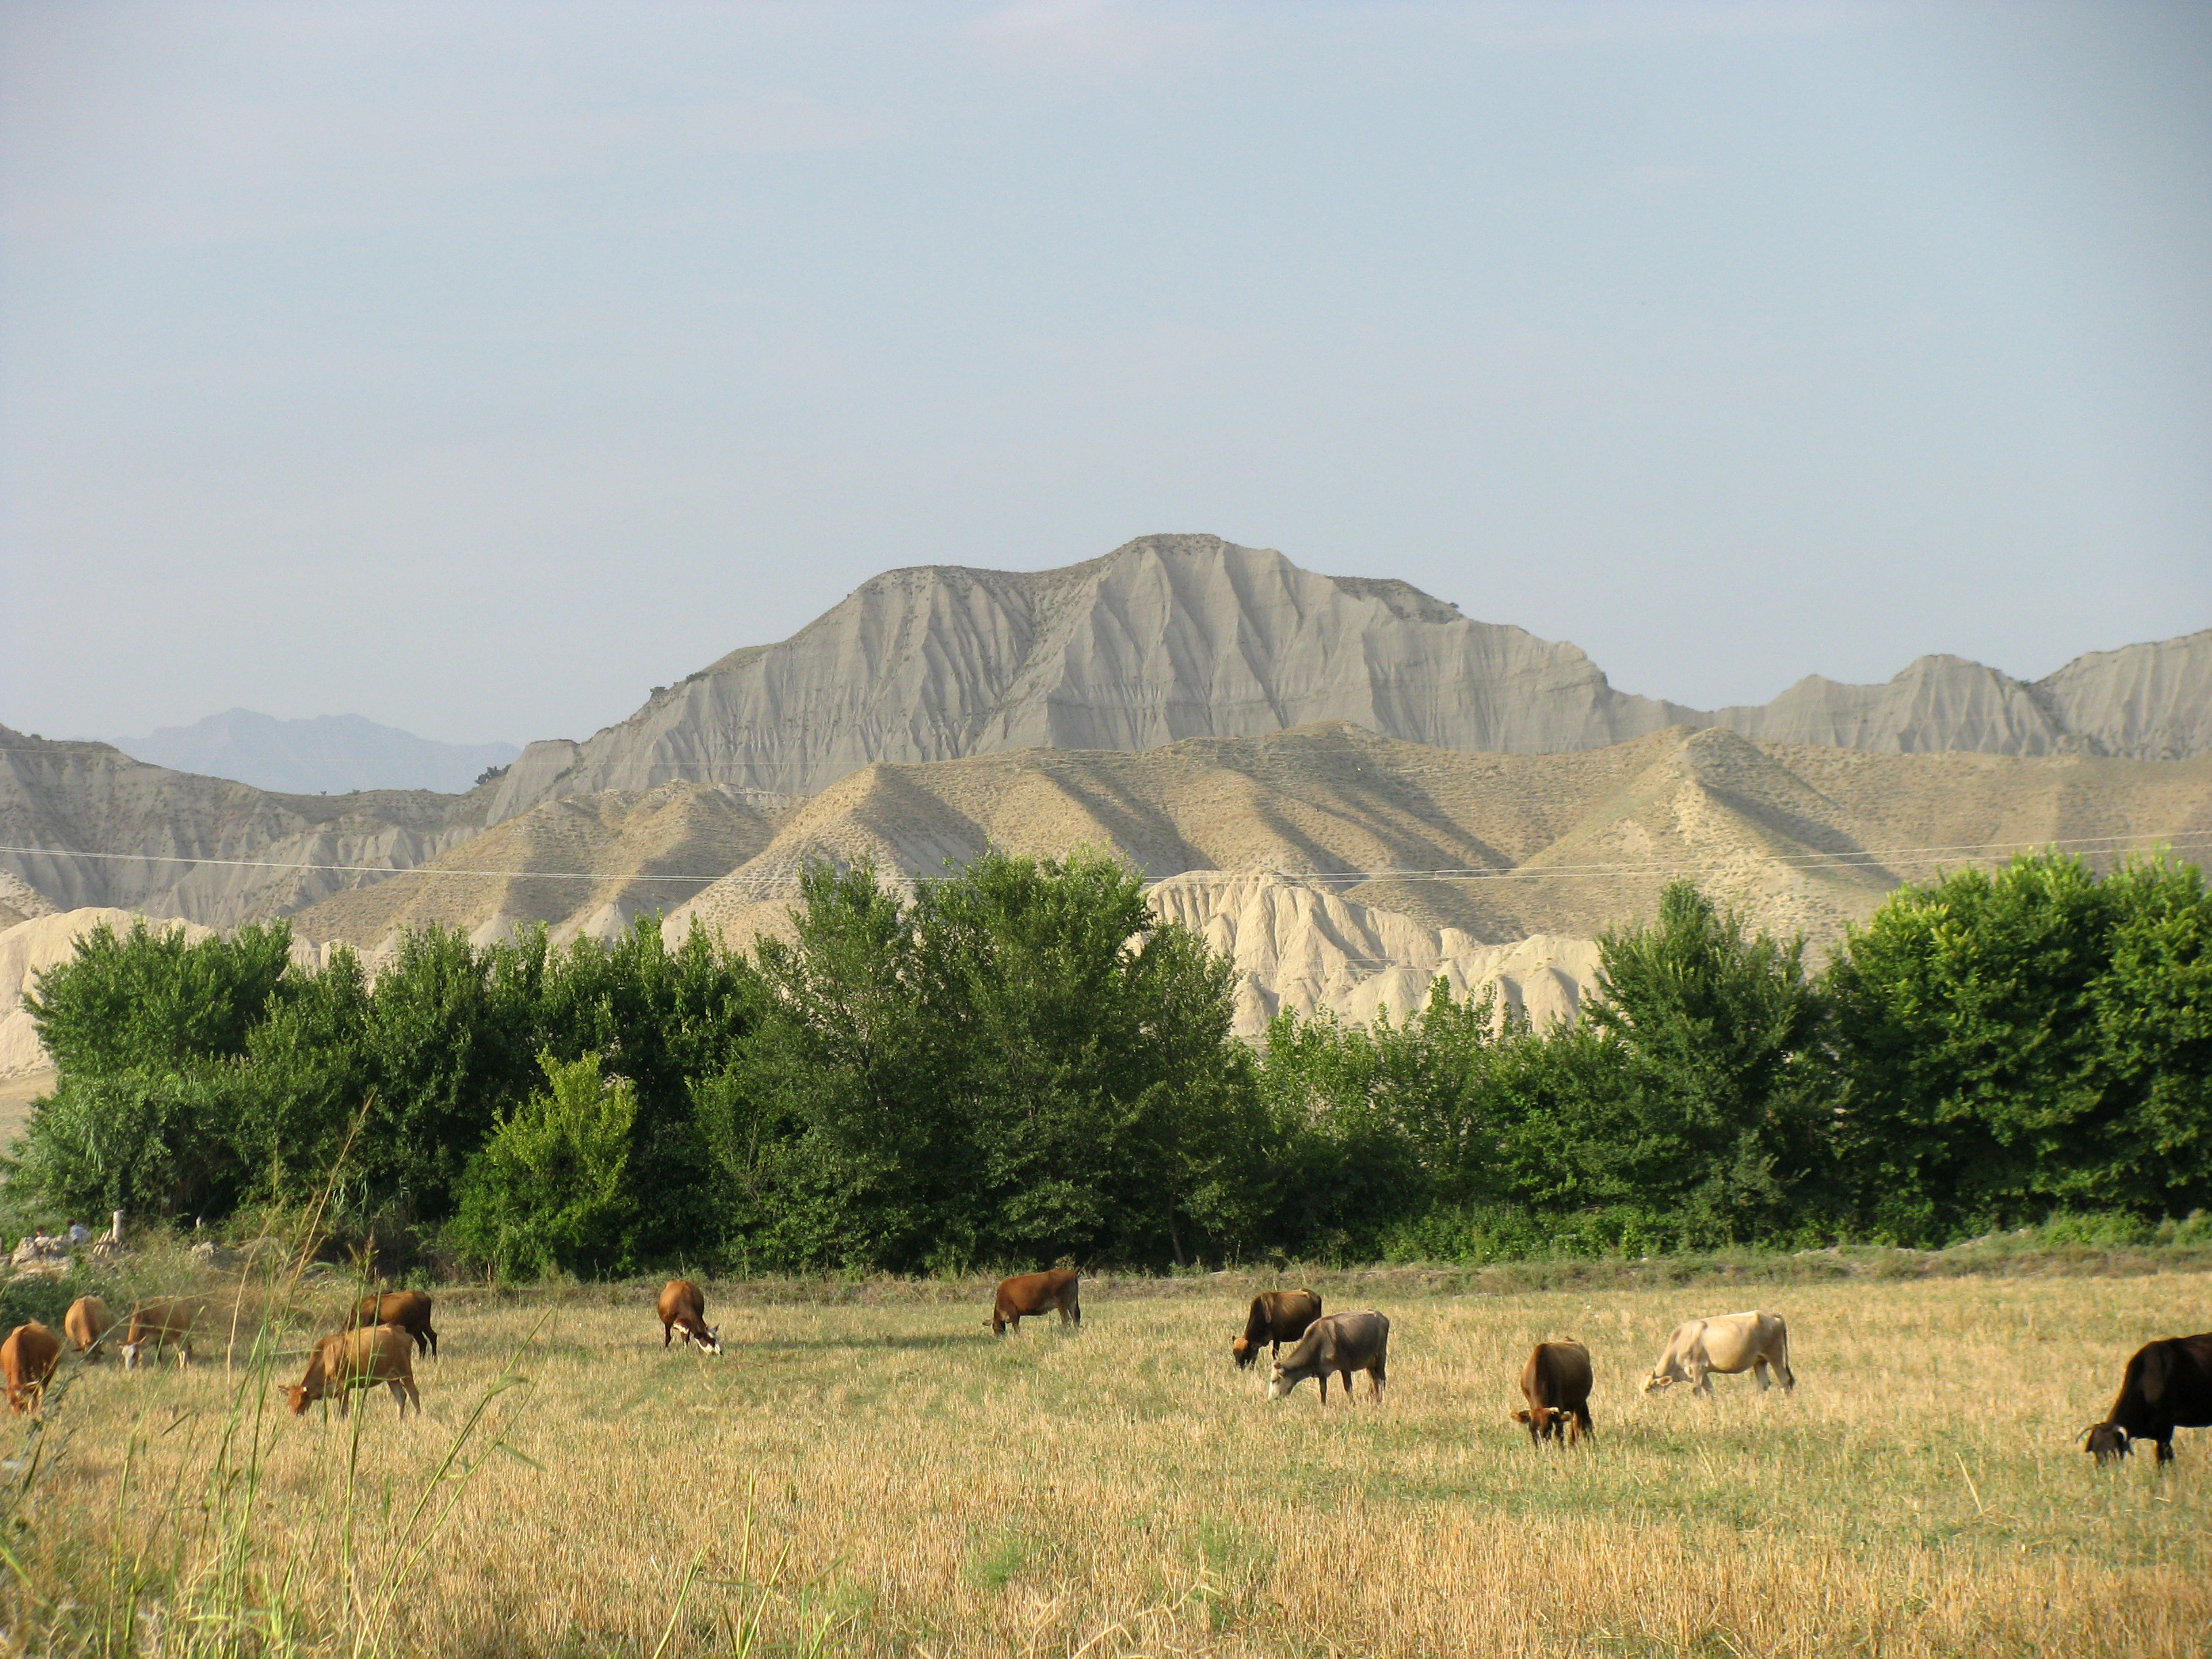 The Azeri countryside